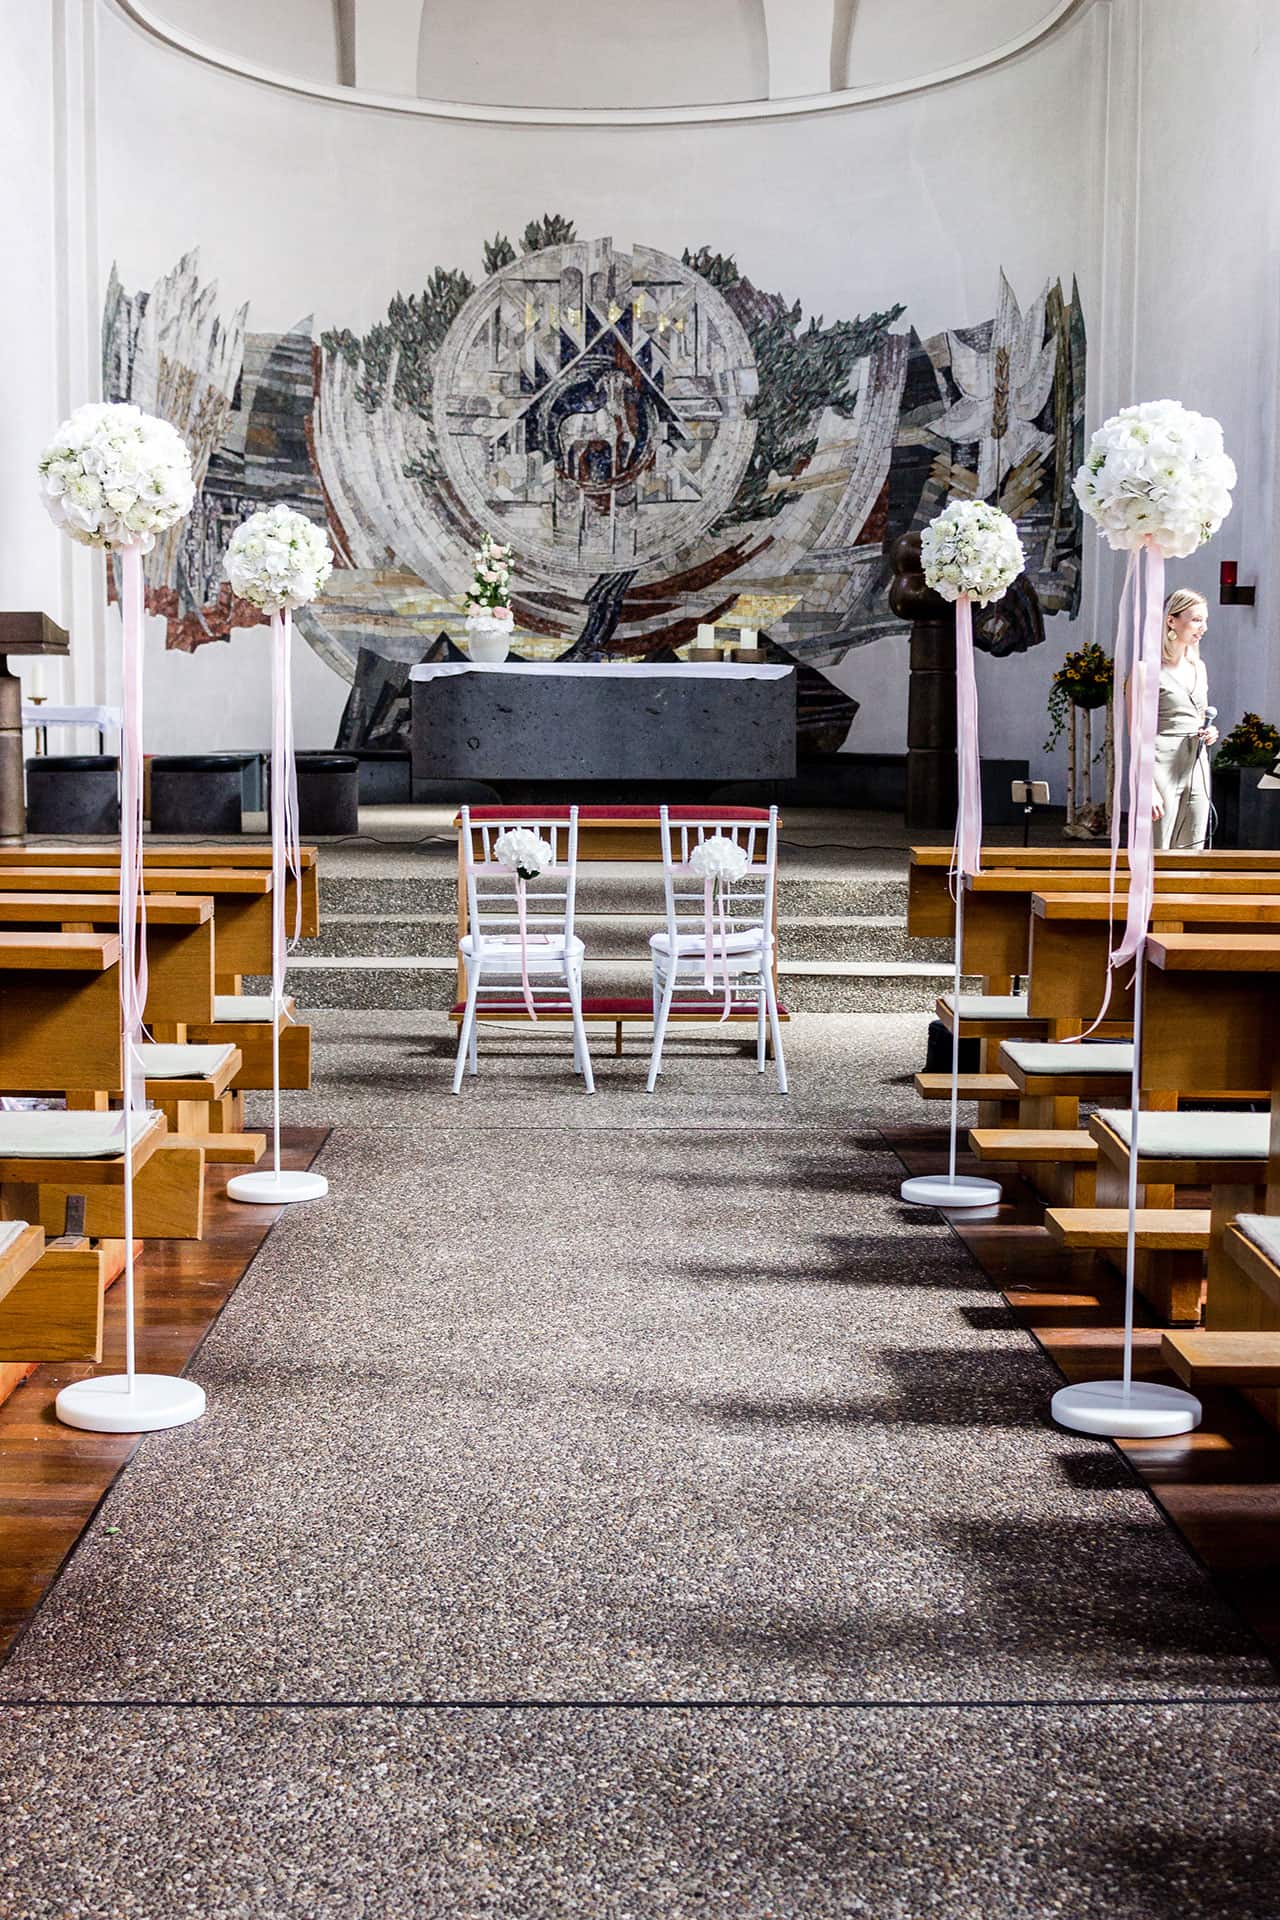 Blumendekoration in der Kirche - weiß besteckte Steckschaumkugeln